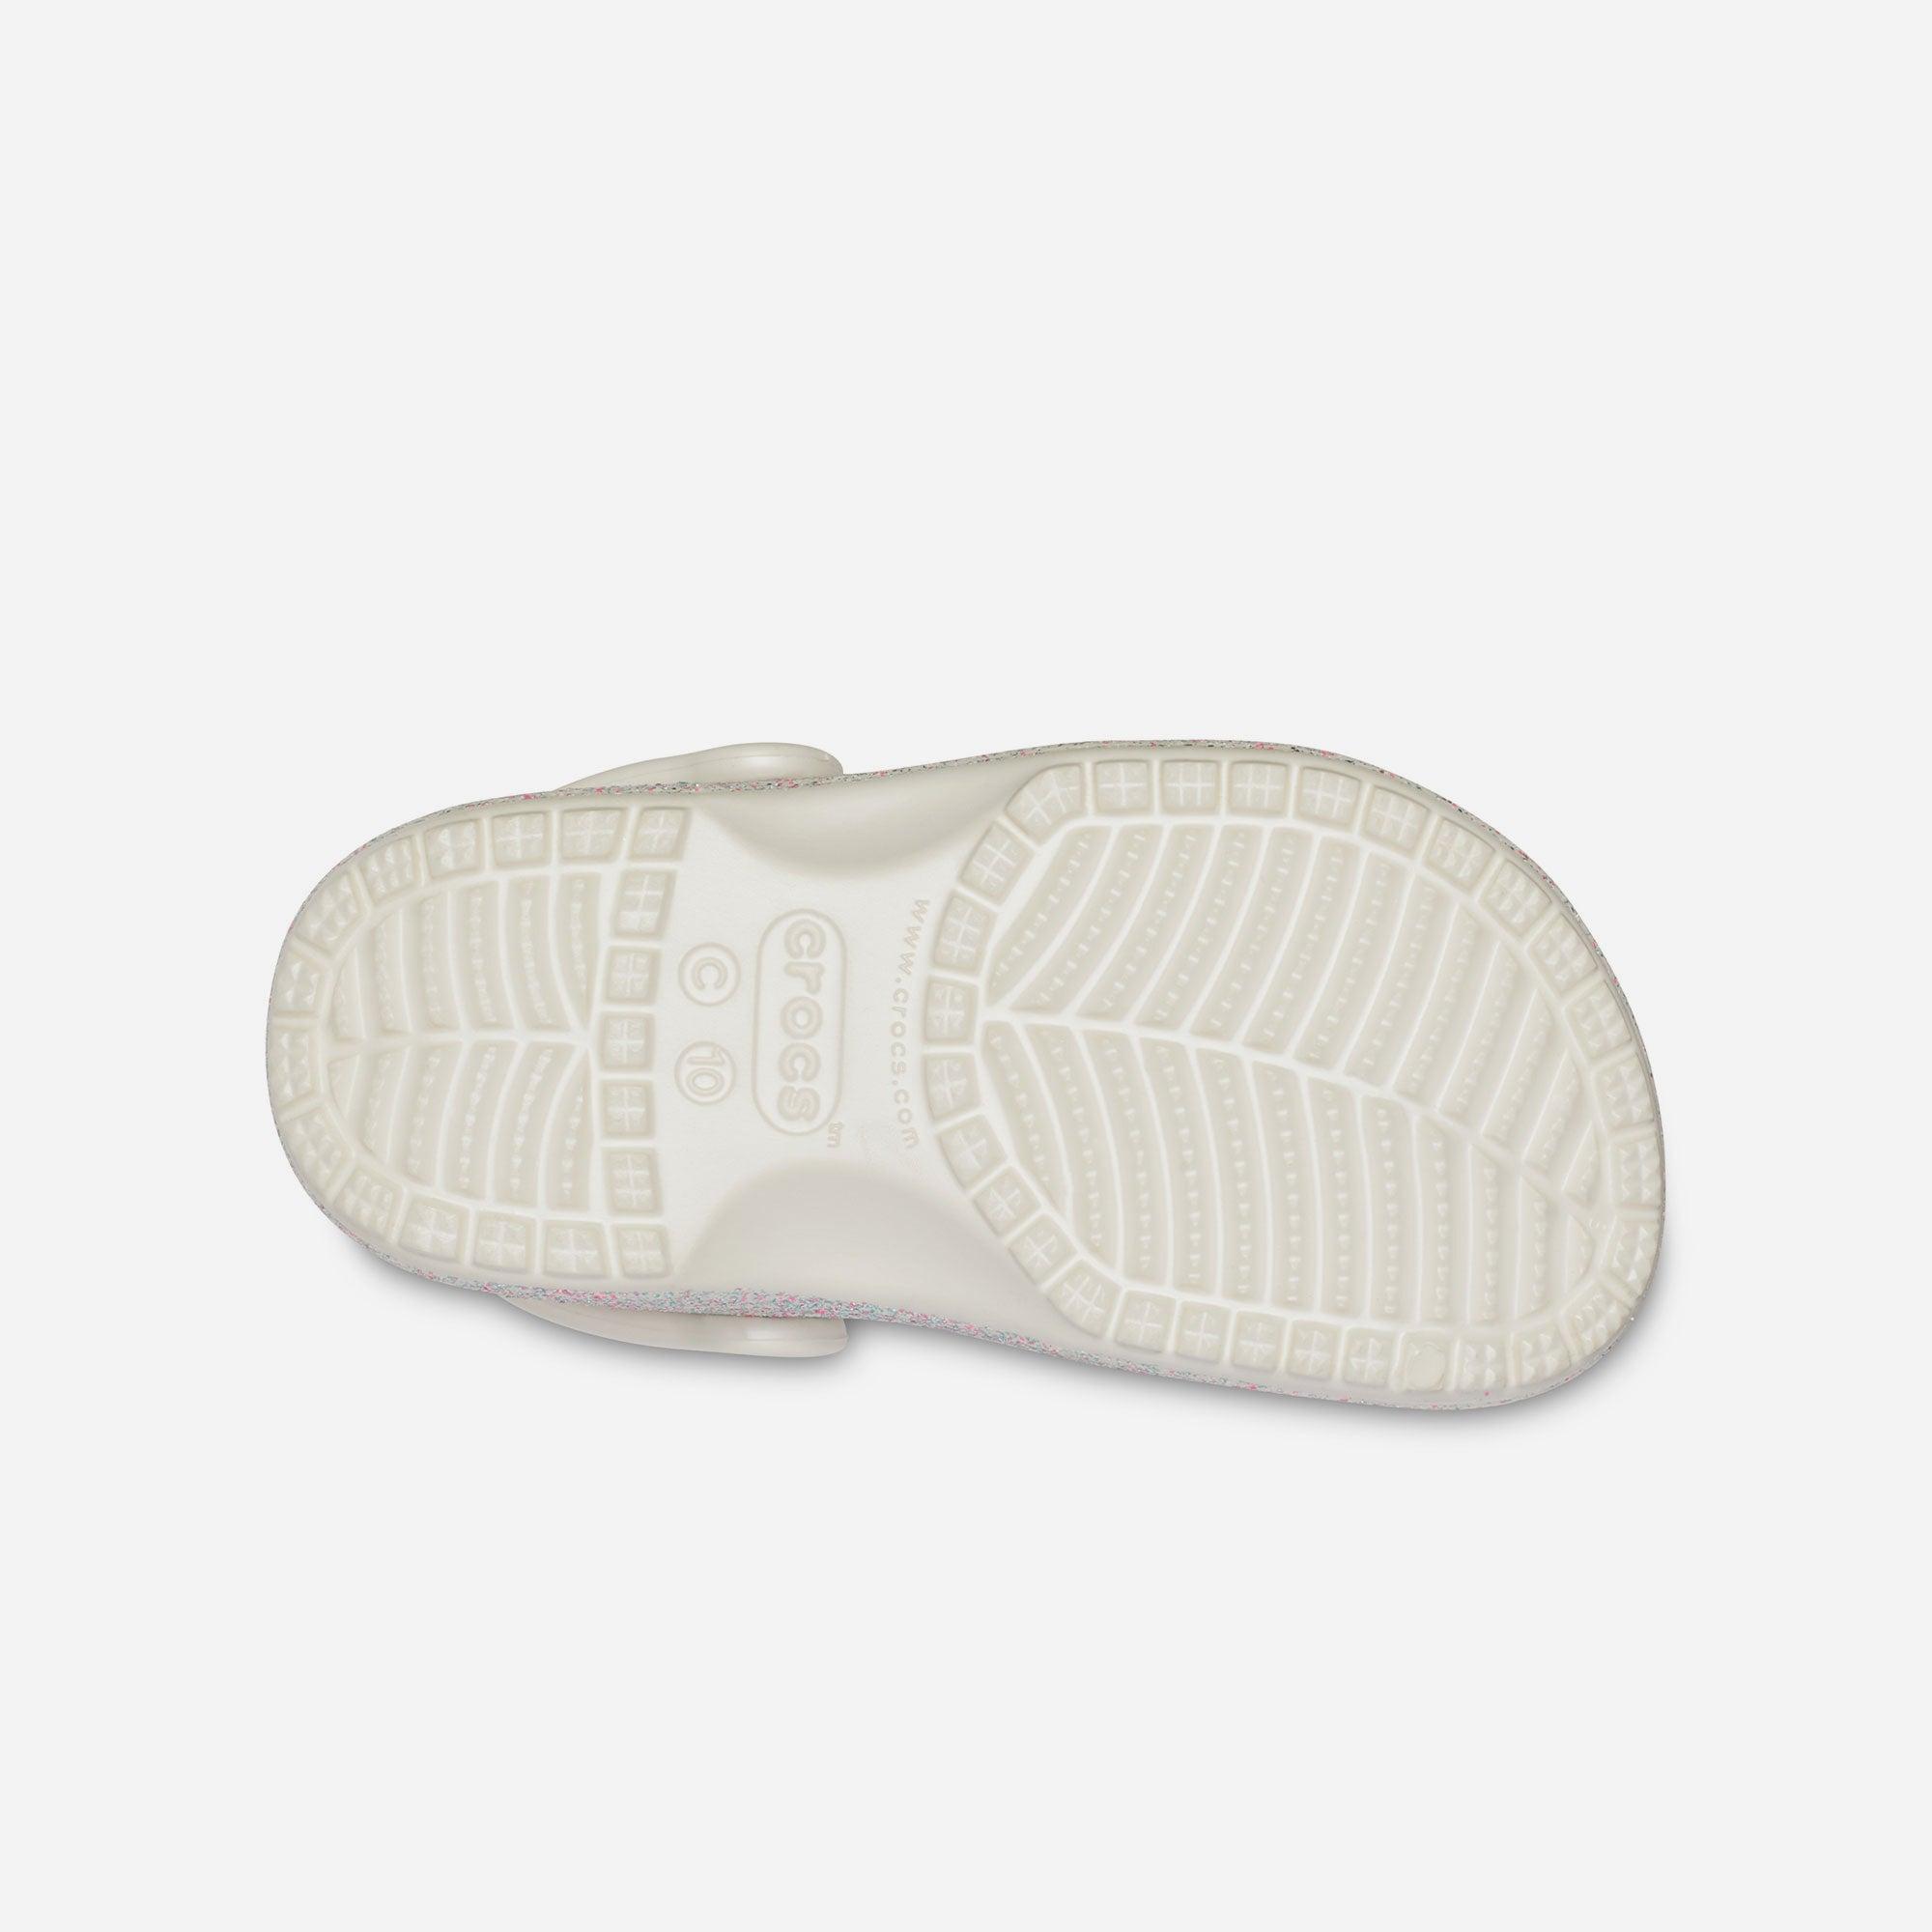 Giày nhựa trẻ em Crocs Classic - 205441-159